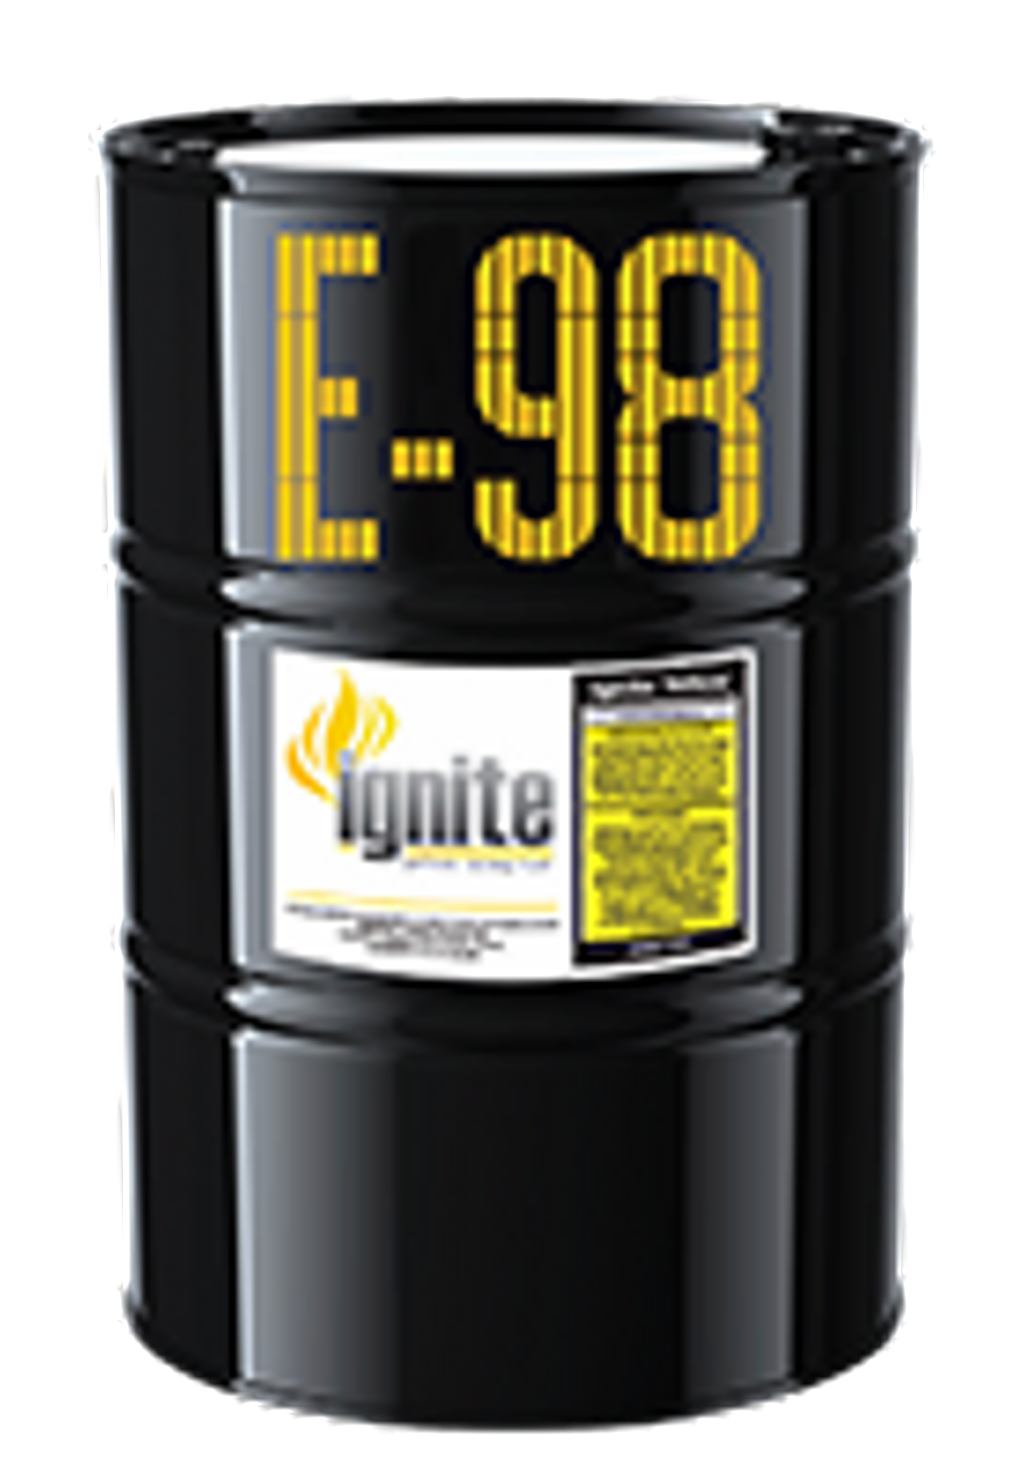 Ignite Yellow E98 - 55 Gallon Drum of Ignite Racing Fuel